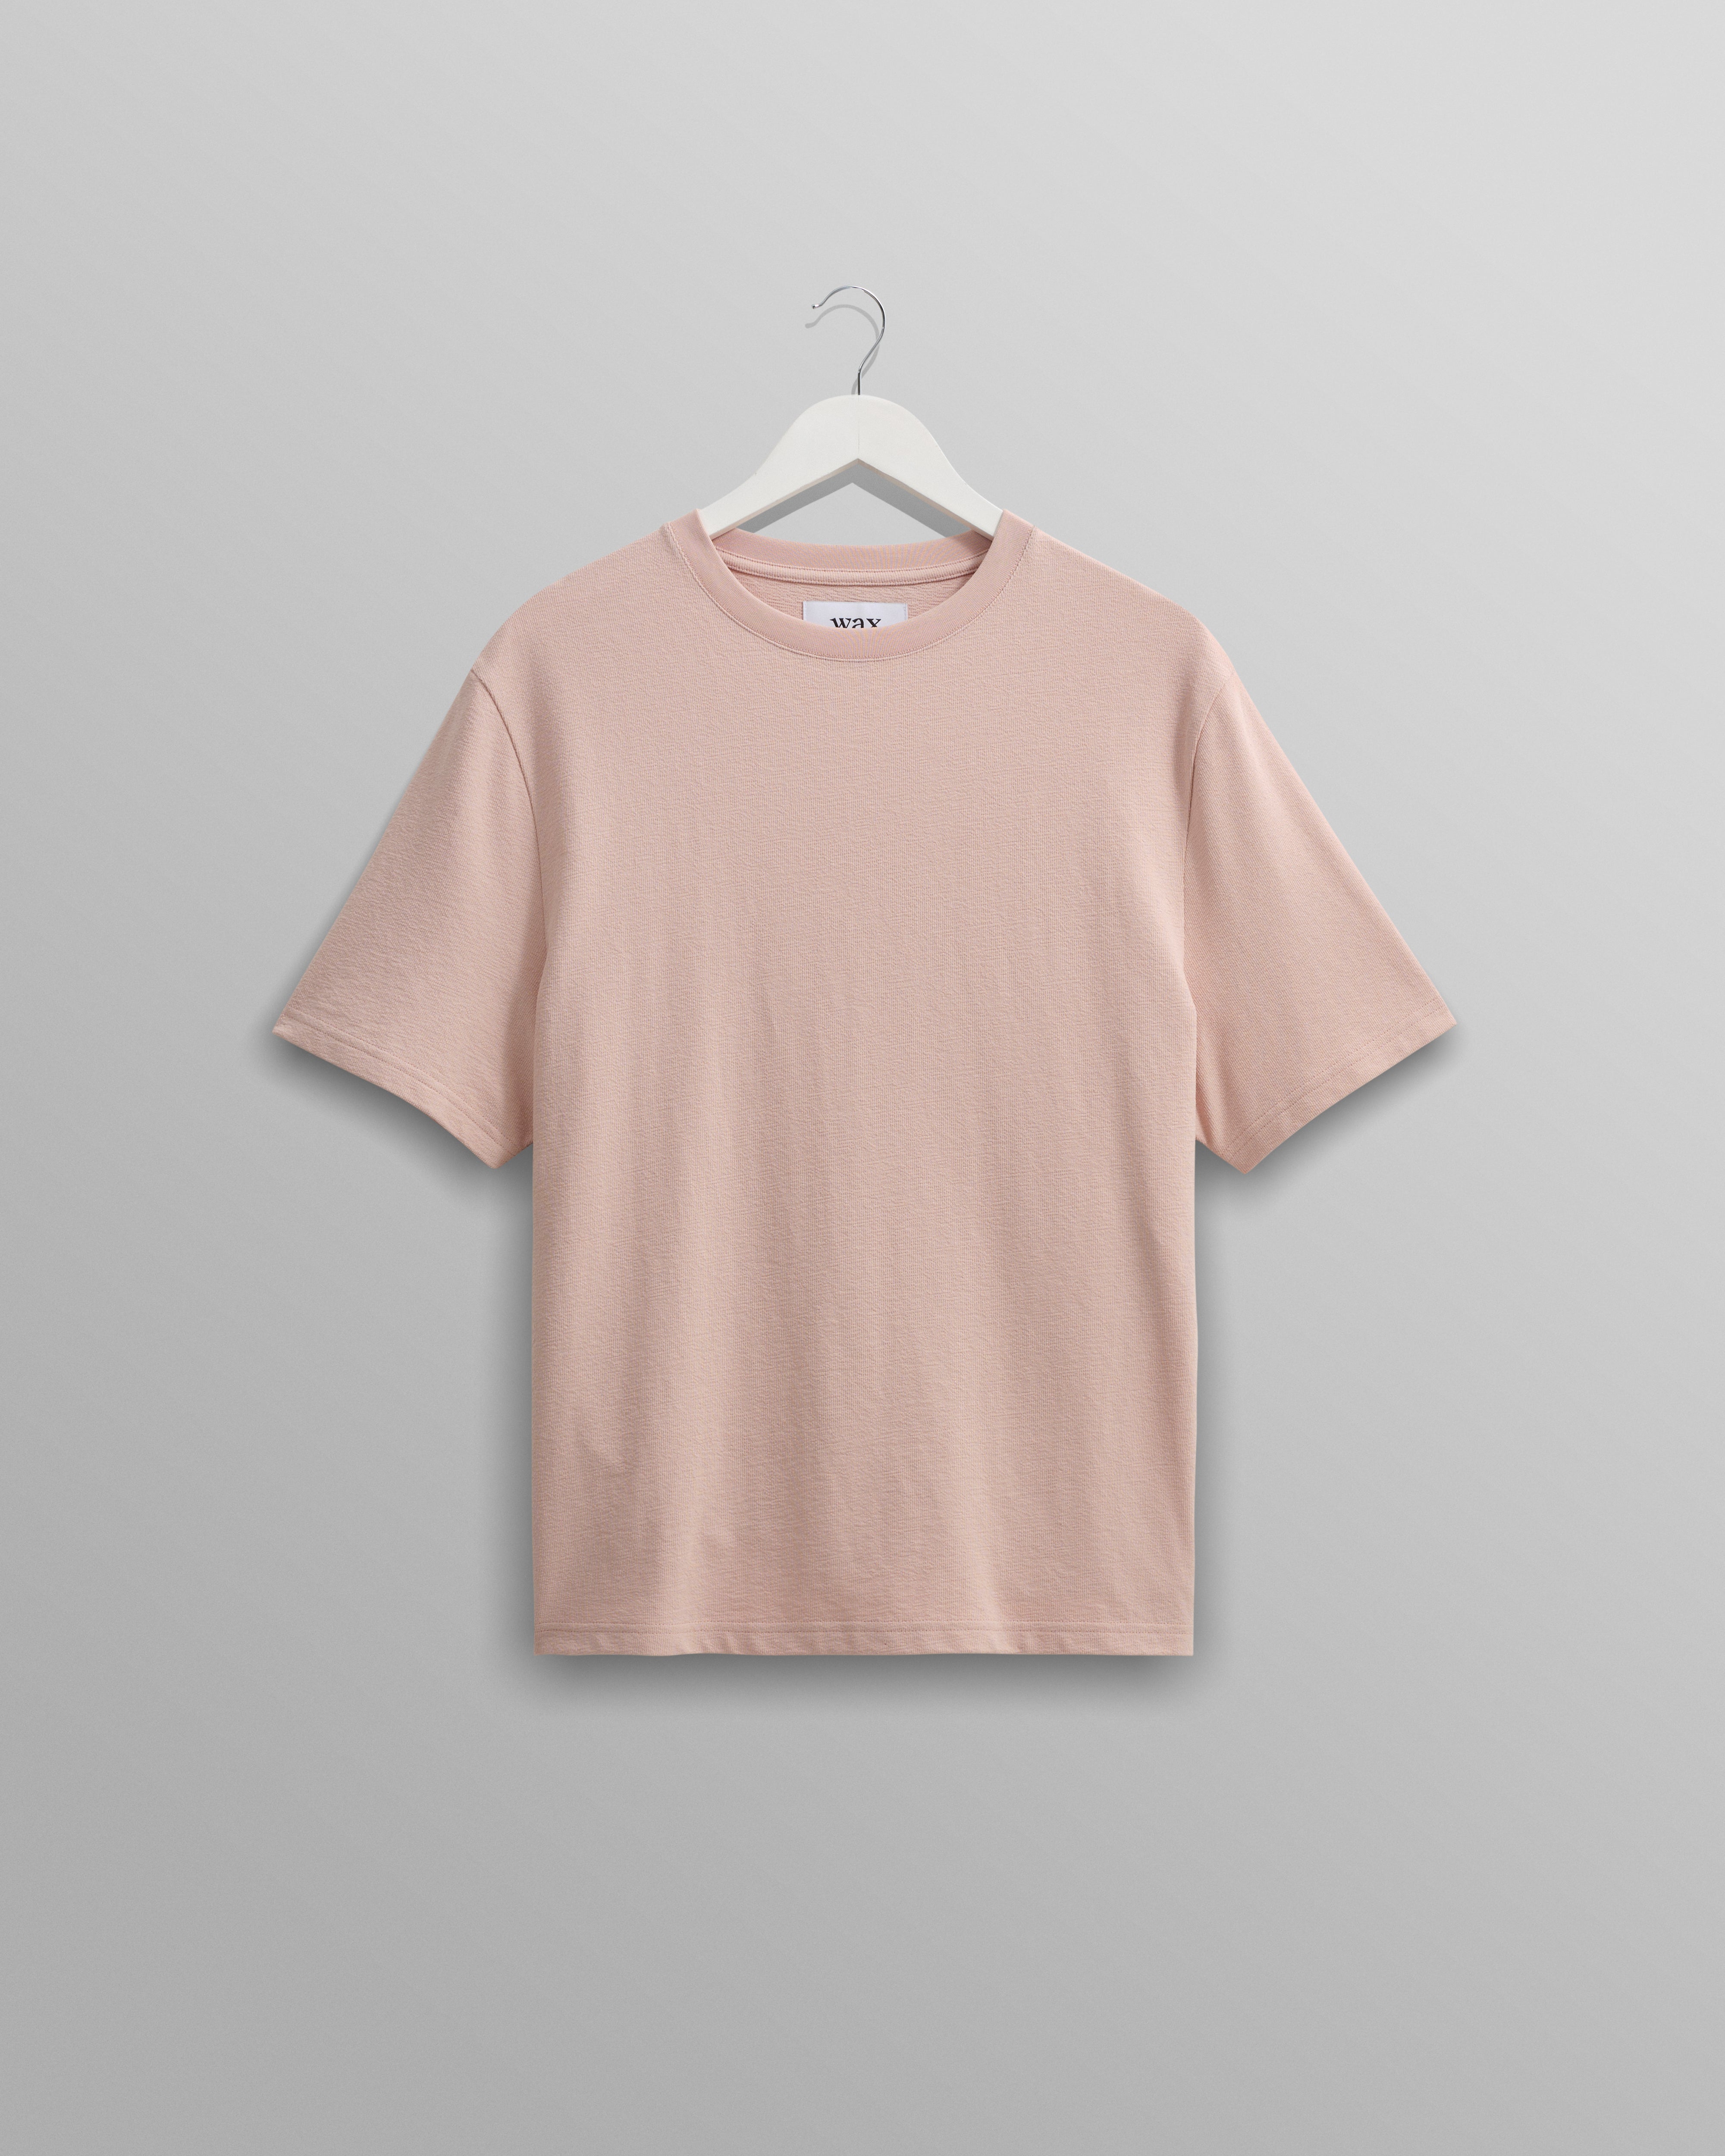 Dean T-Shirt Textured Pink & Wax London